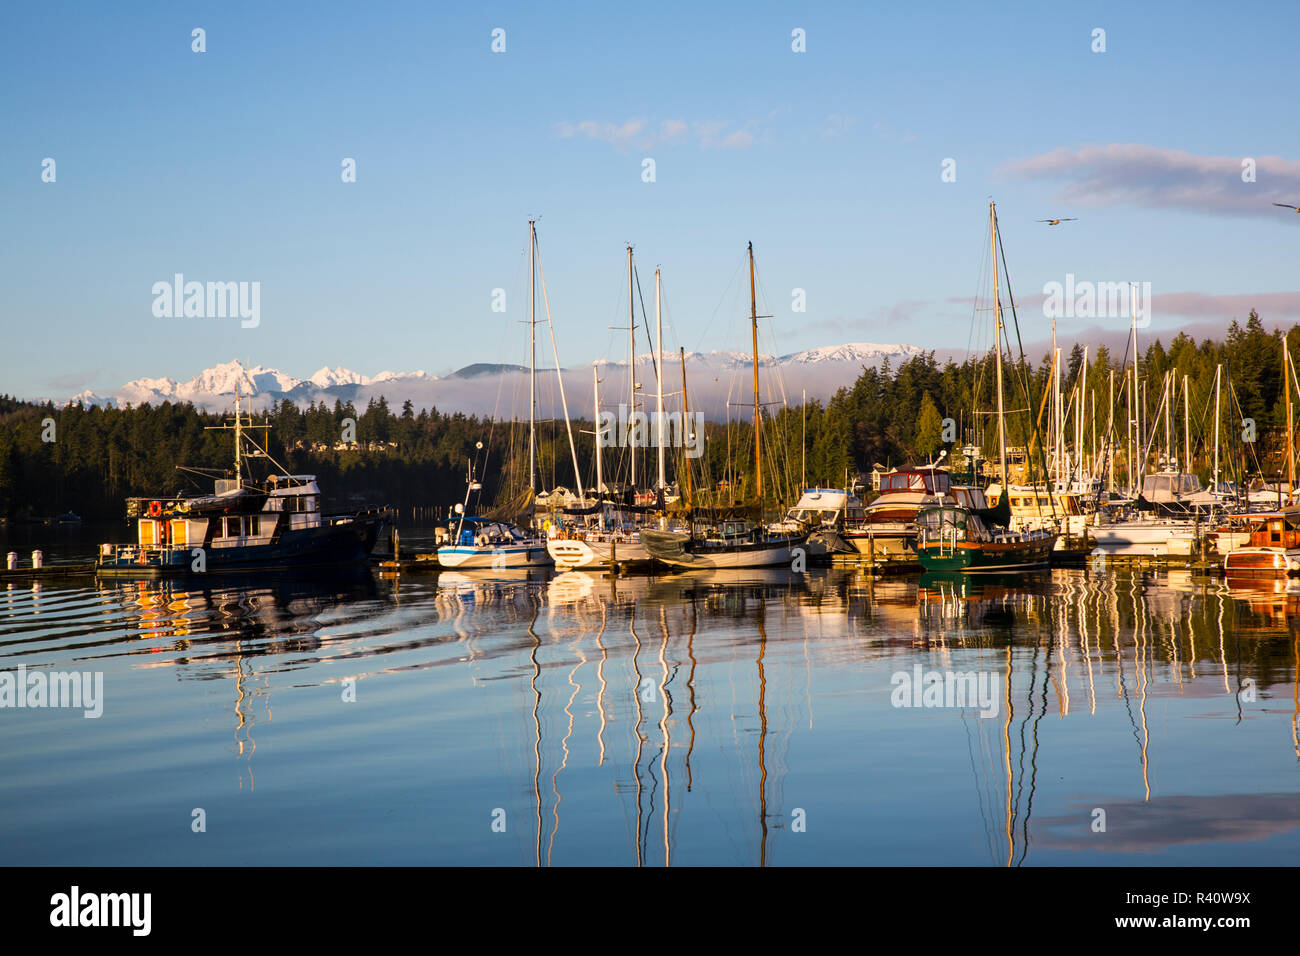 Port Ludlow, nello Stato di Washington. Mattina calda la riflessione della luce di barche in marina, un gabbiano, e le montagne con la nebbia Foto Stock